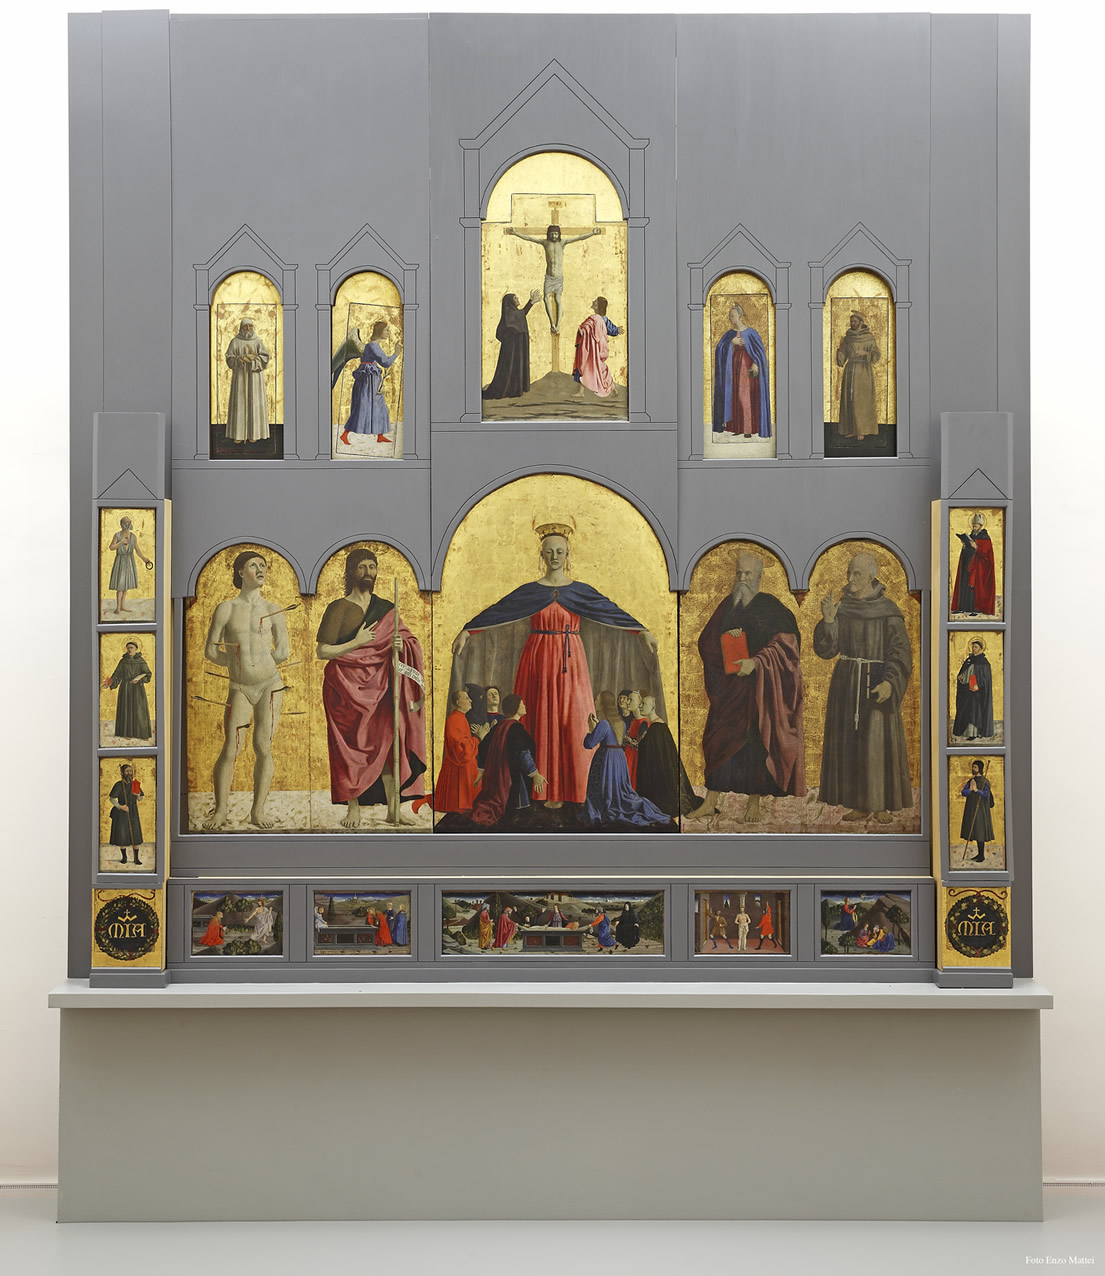 Piero della Francesca, Polyptych of Mercy (1445-1462; oil and tempera on panel, 273 x 330 cm; Sansepolcro, Museo Civico